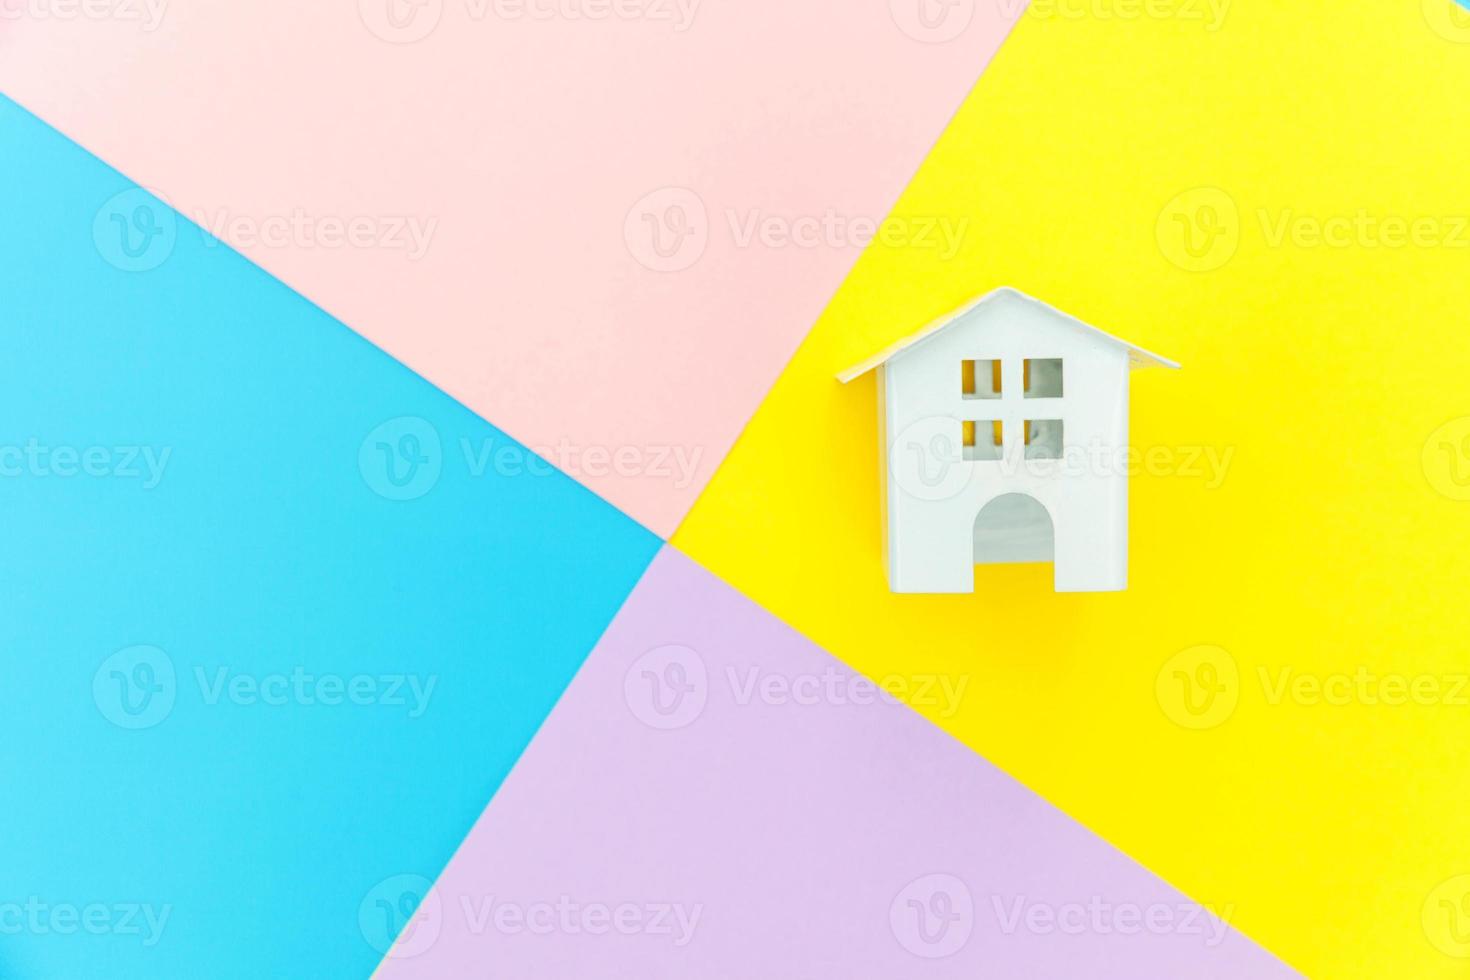 simplemente diseñe una casa de juguete blanca en miniatura aislada en azul amarillo rosa púrpura pastel colorido moderno fondo geométrico hipoteca propiedad seguro concepto de casa de ensueño. espacio de copia de vista superior plana. foto